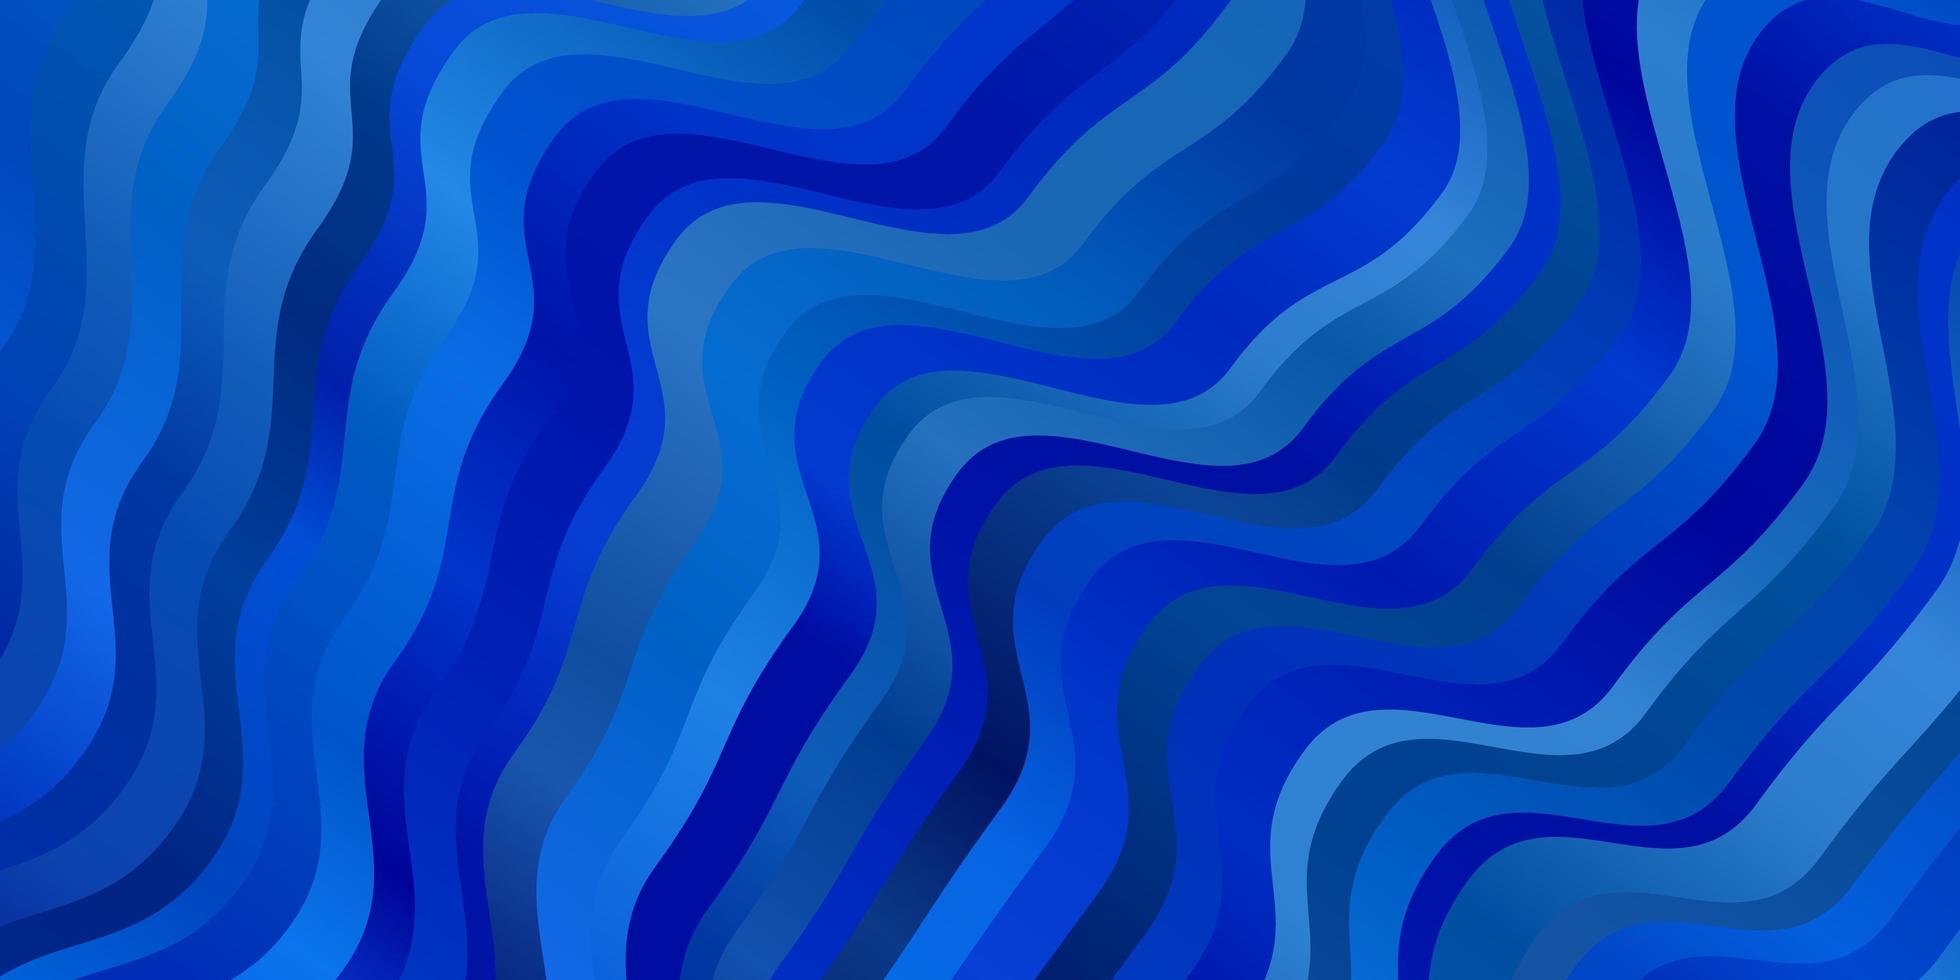 trama vettoriale blu chiaro con linee ironiche illustrazione colorata con motivo a linee curve per annunci pubblicitari